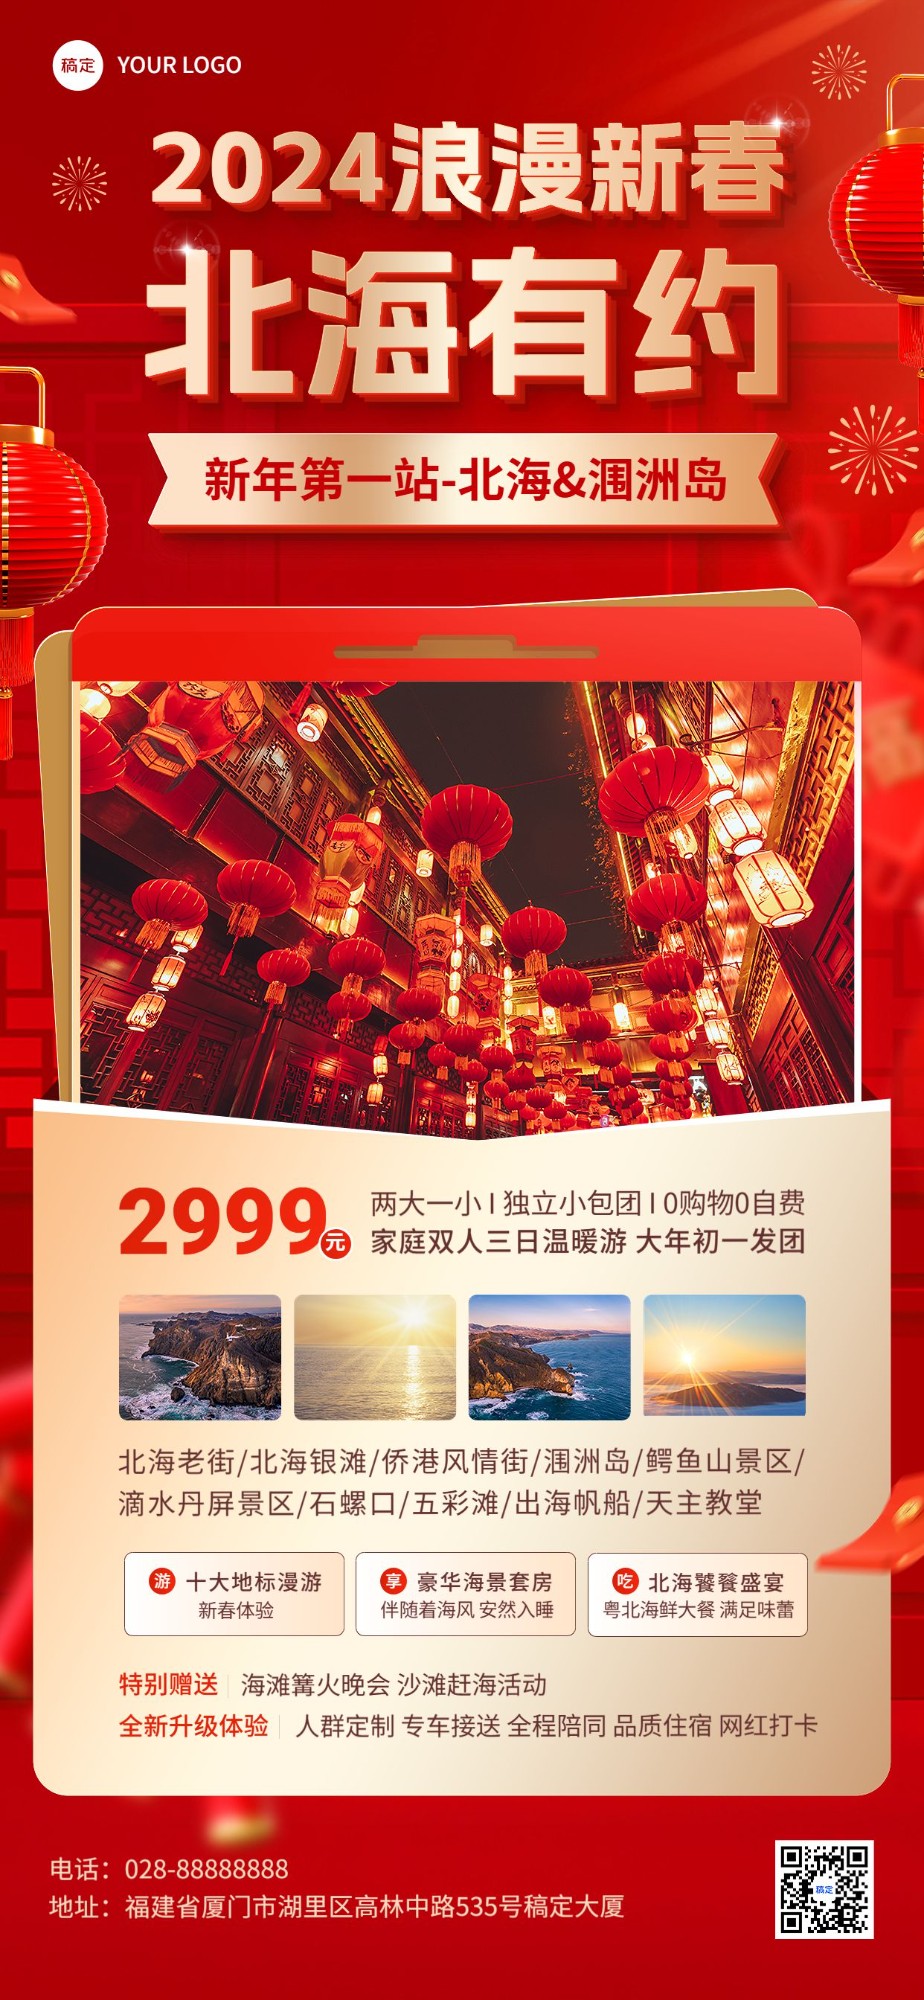 旅游出行春节旅行社北海线路营销宣传全屏竖版海报